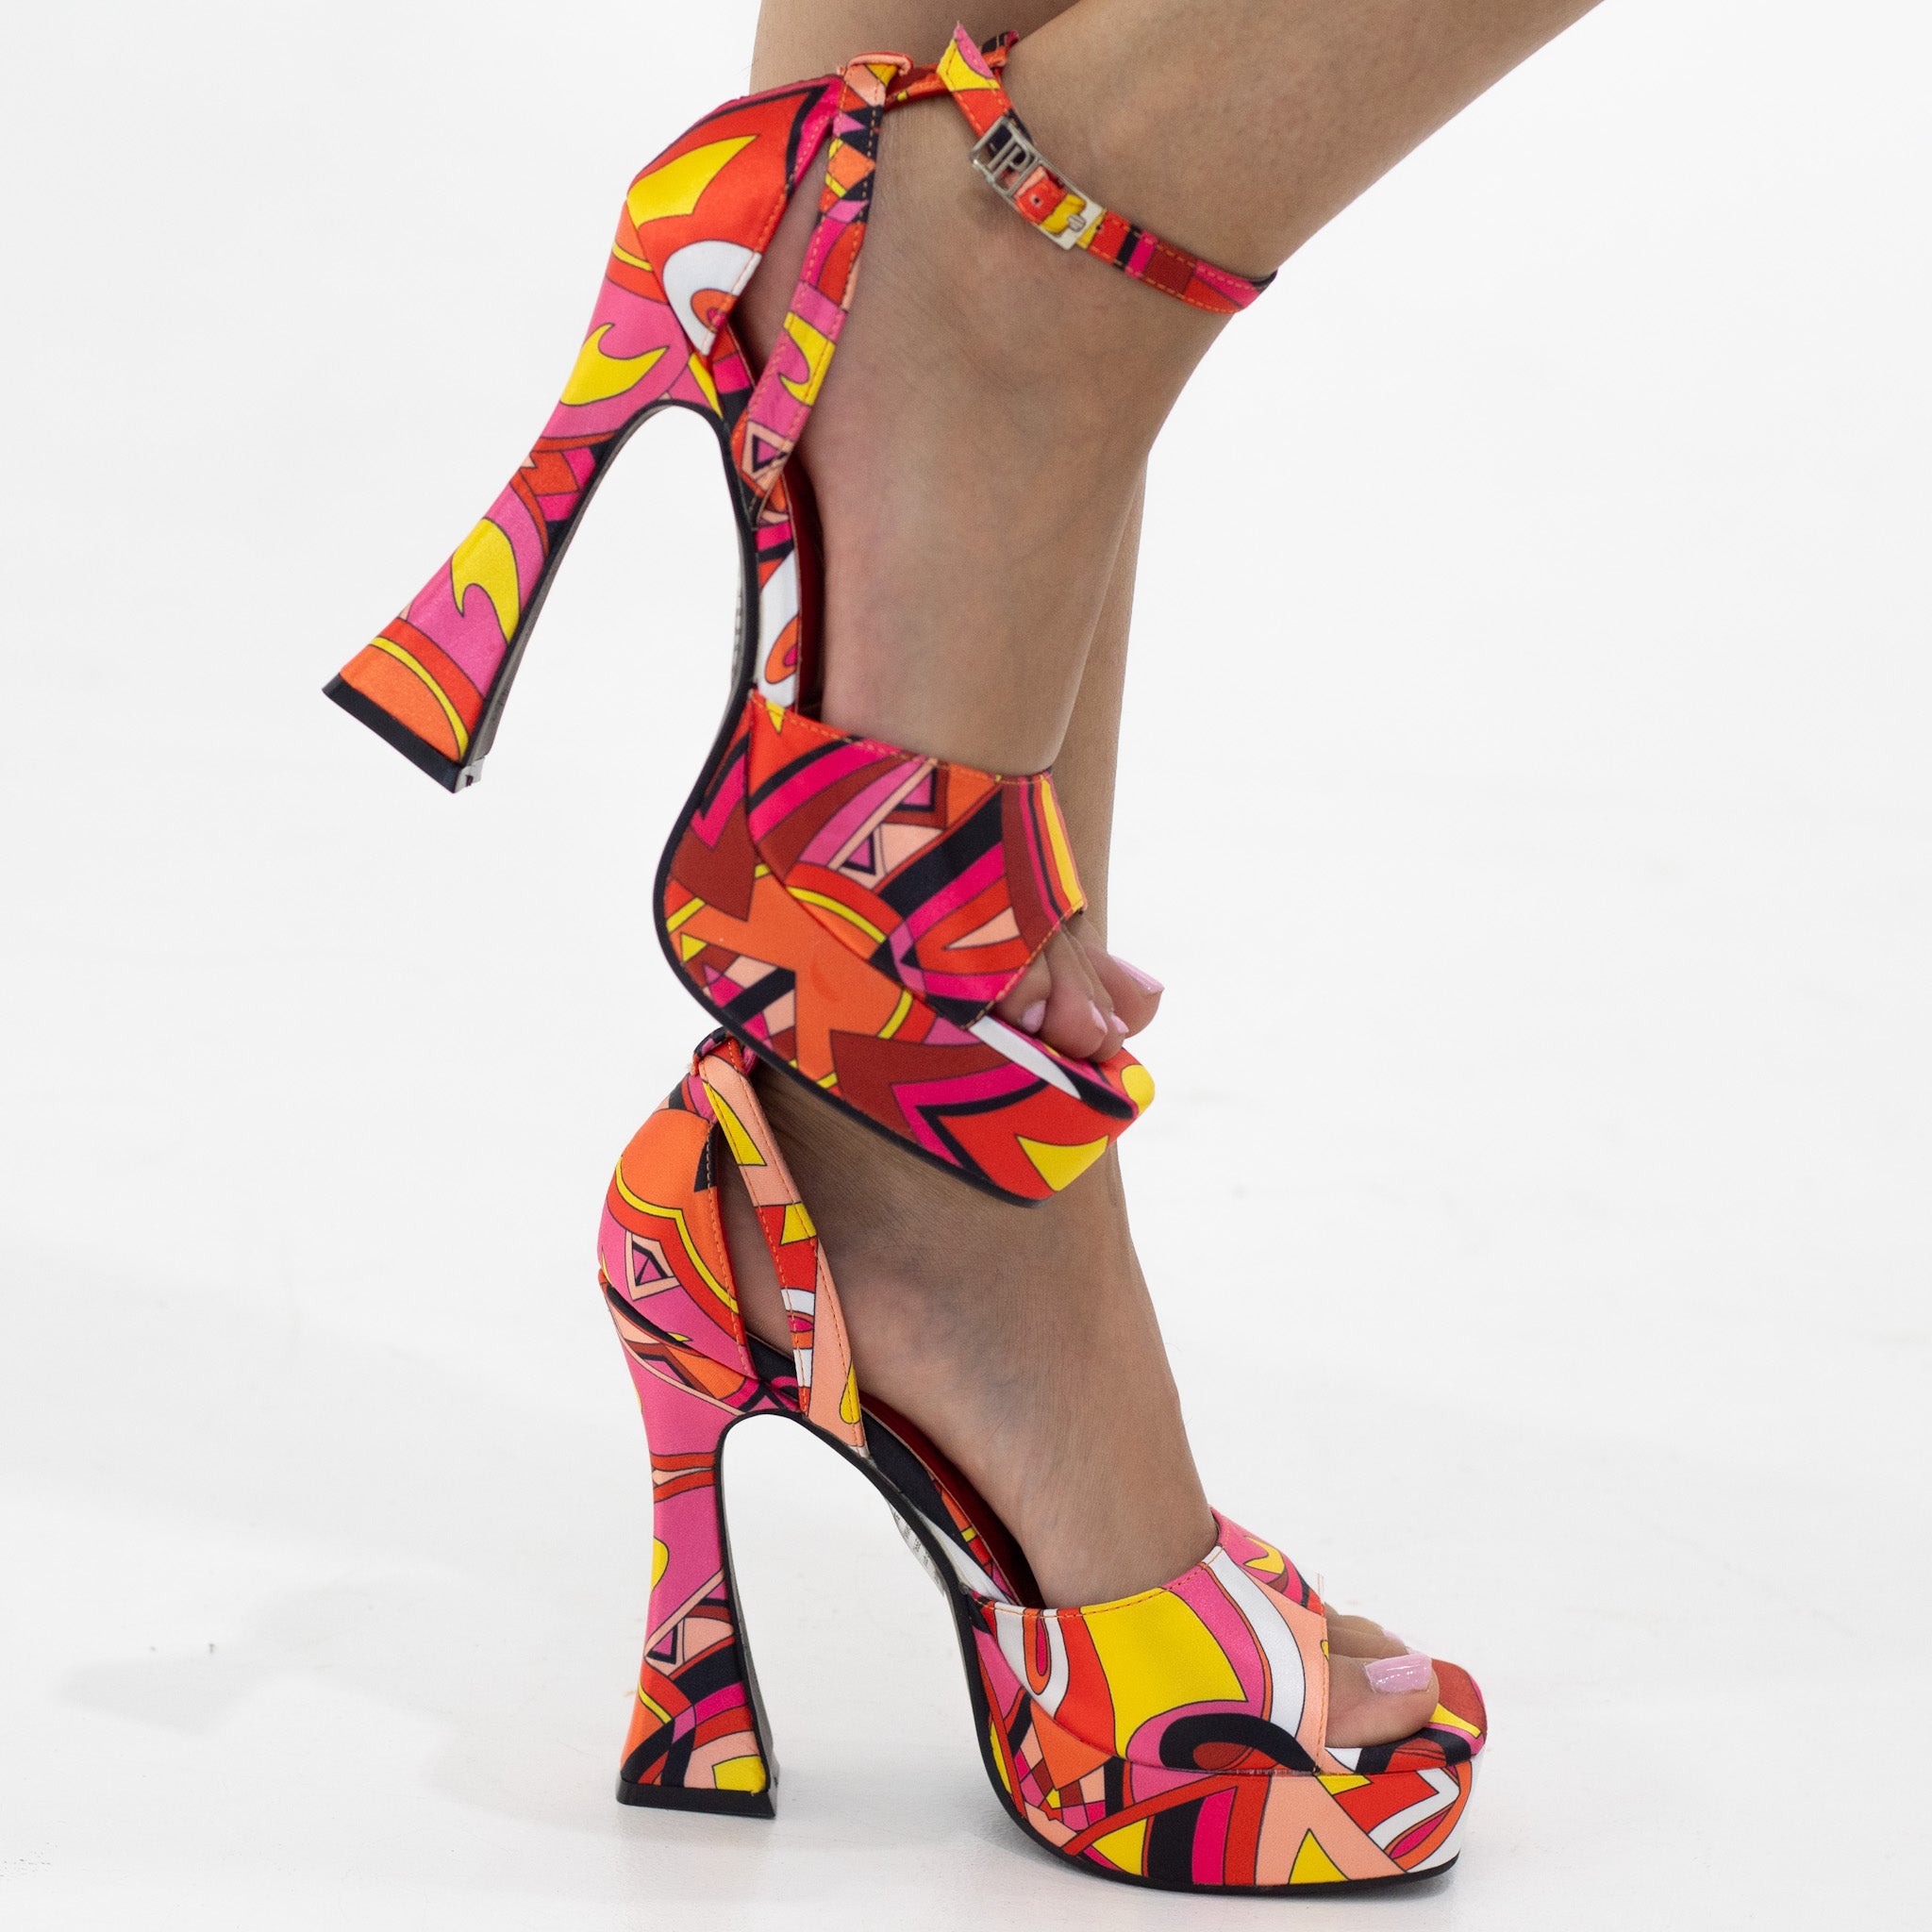 Darika printed multi-colored 13cm platform heel sandal fuschia